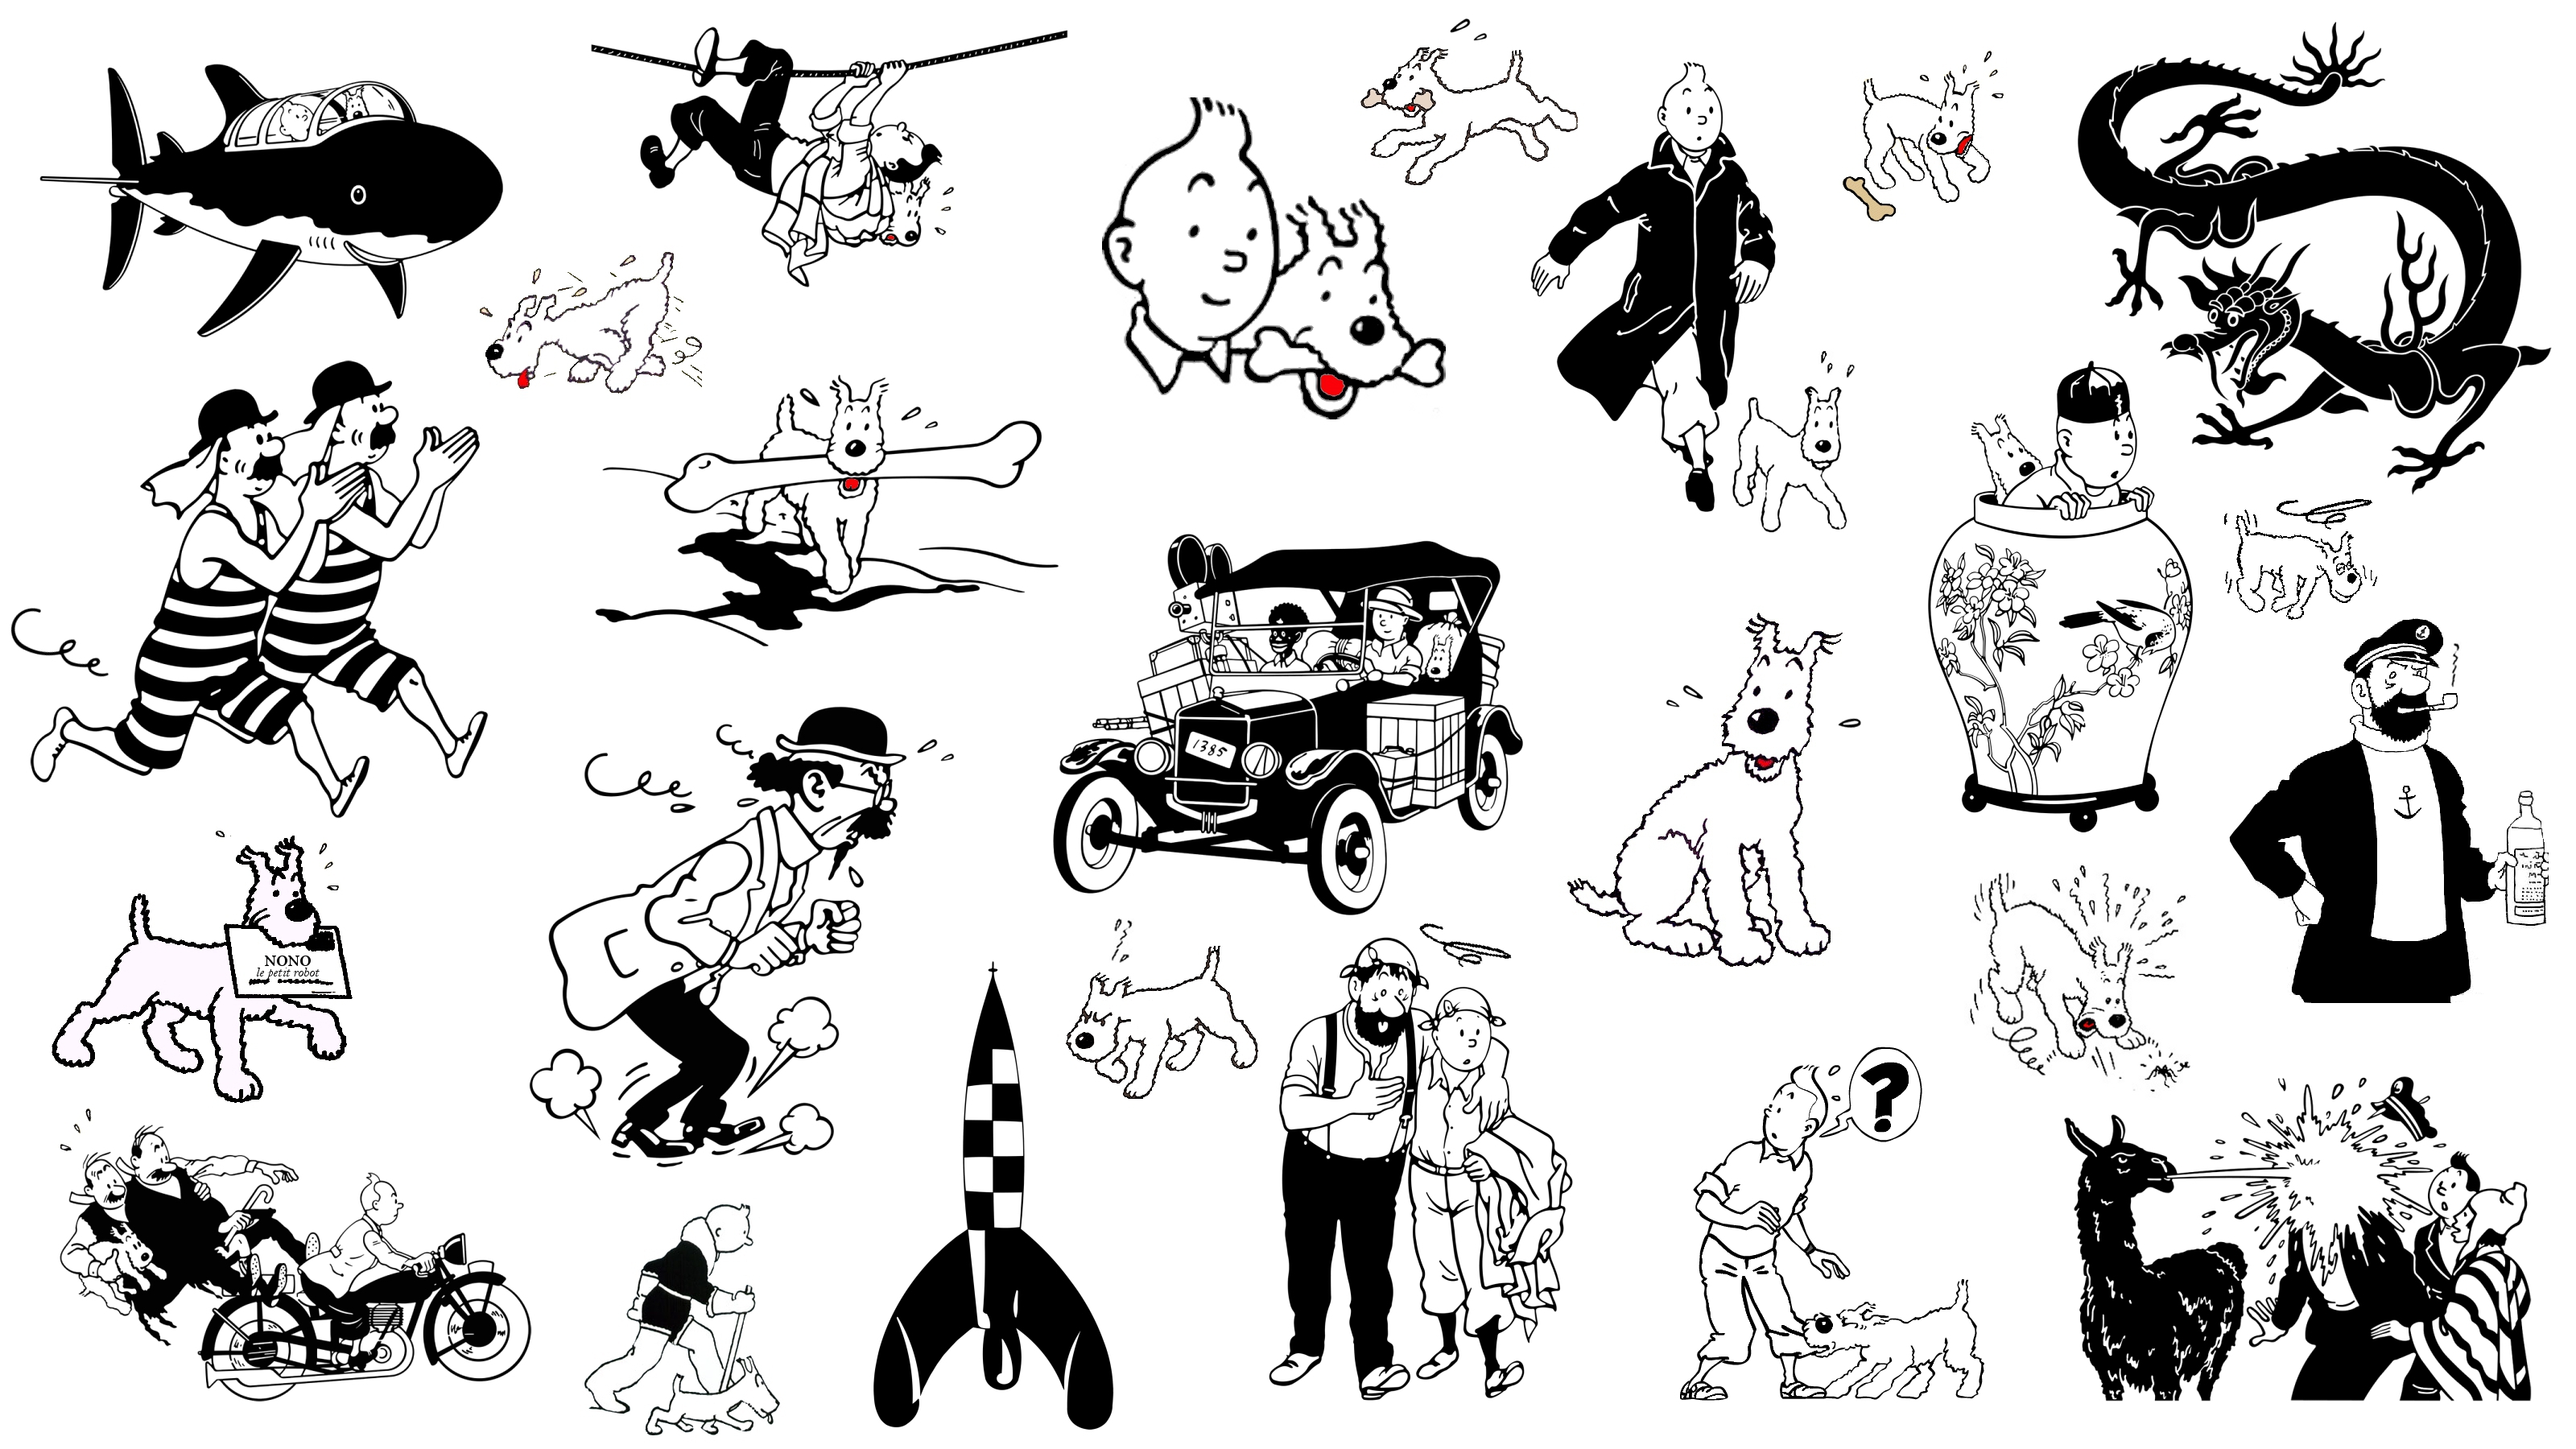 Tintin - Tintin Wallpaper 32261111 - Fanpop